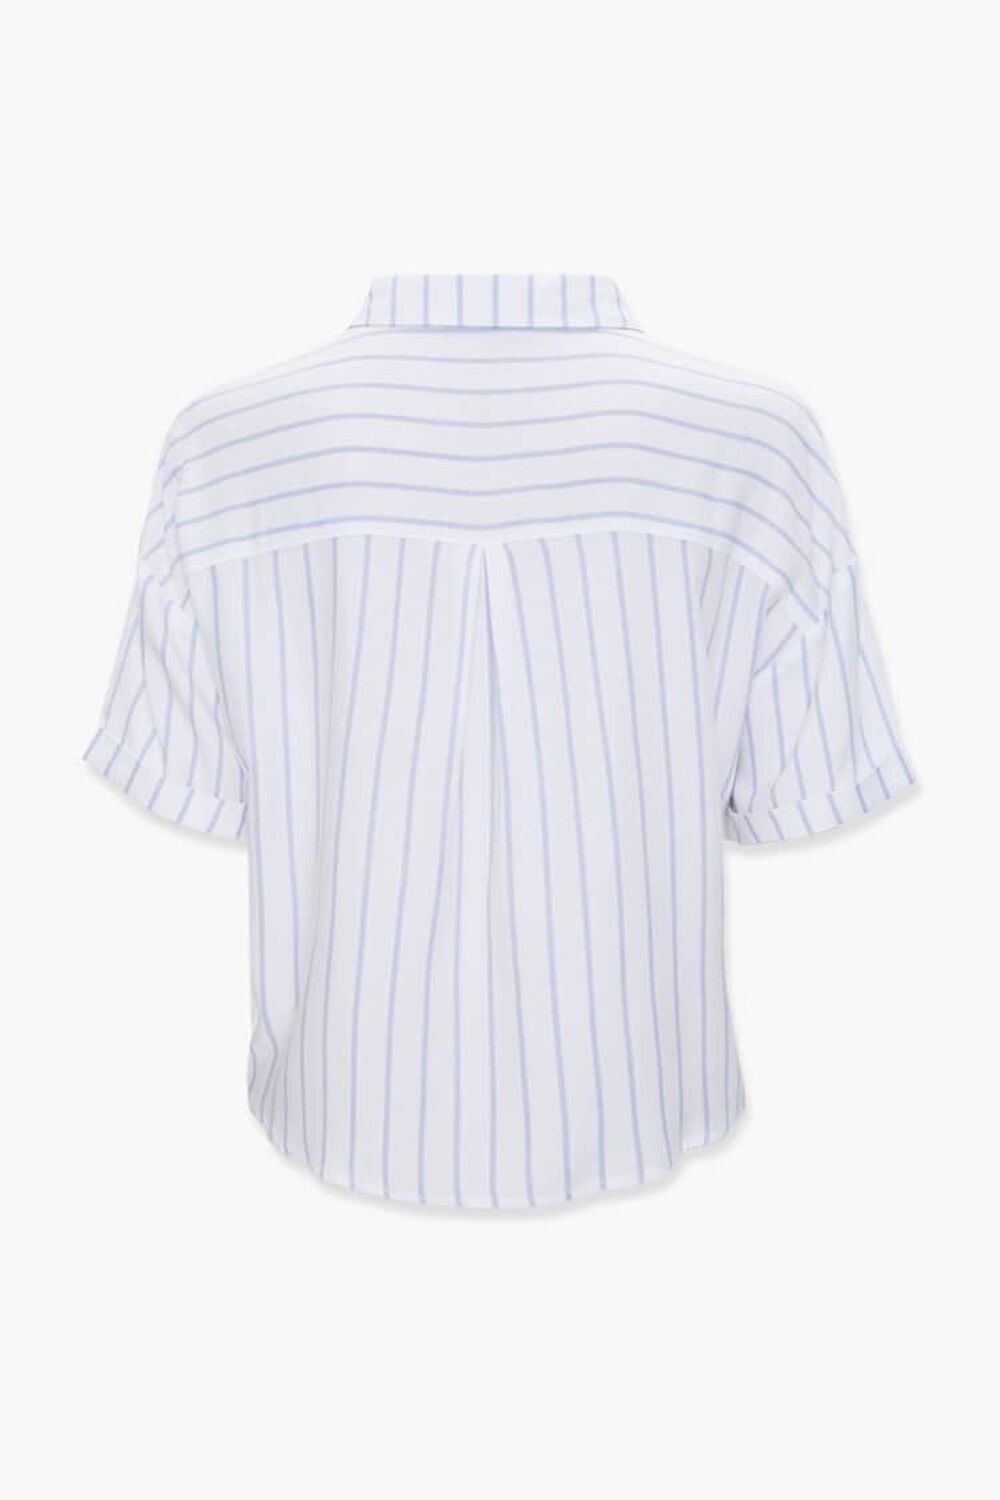 WHITE/BLUE Boxy Pinstriped Shirt, image 2